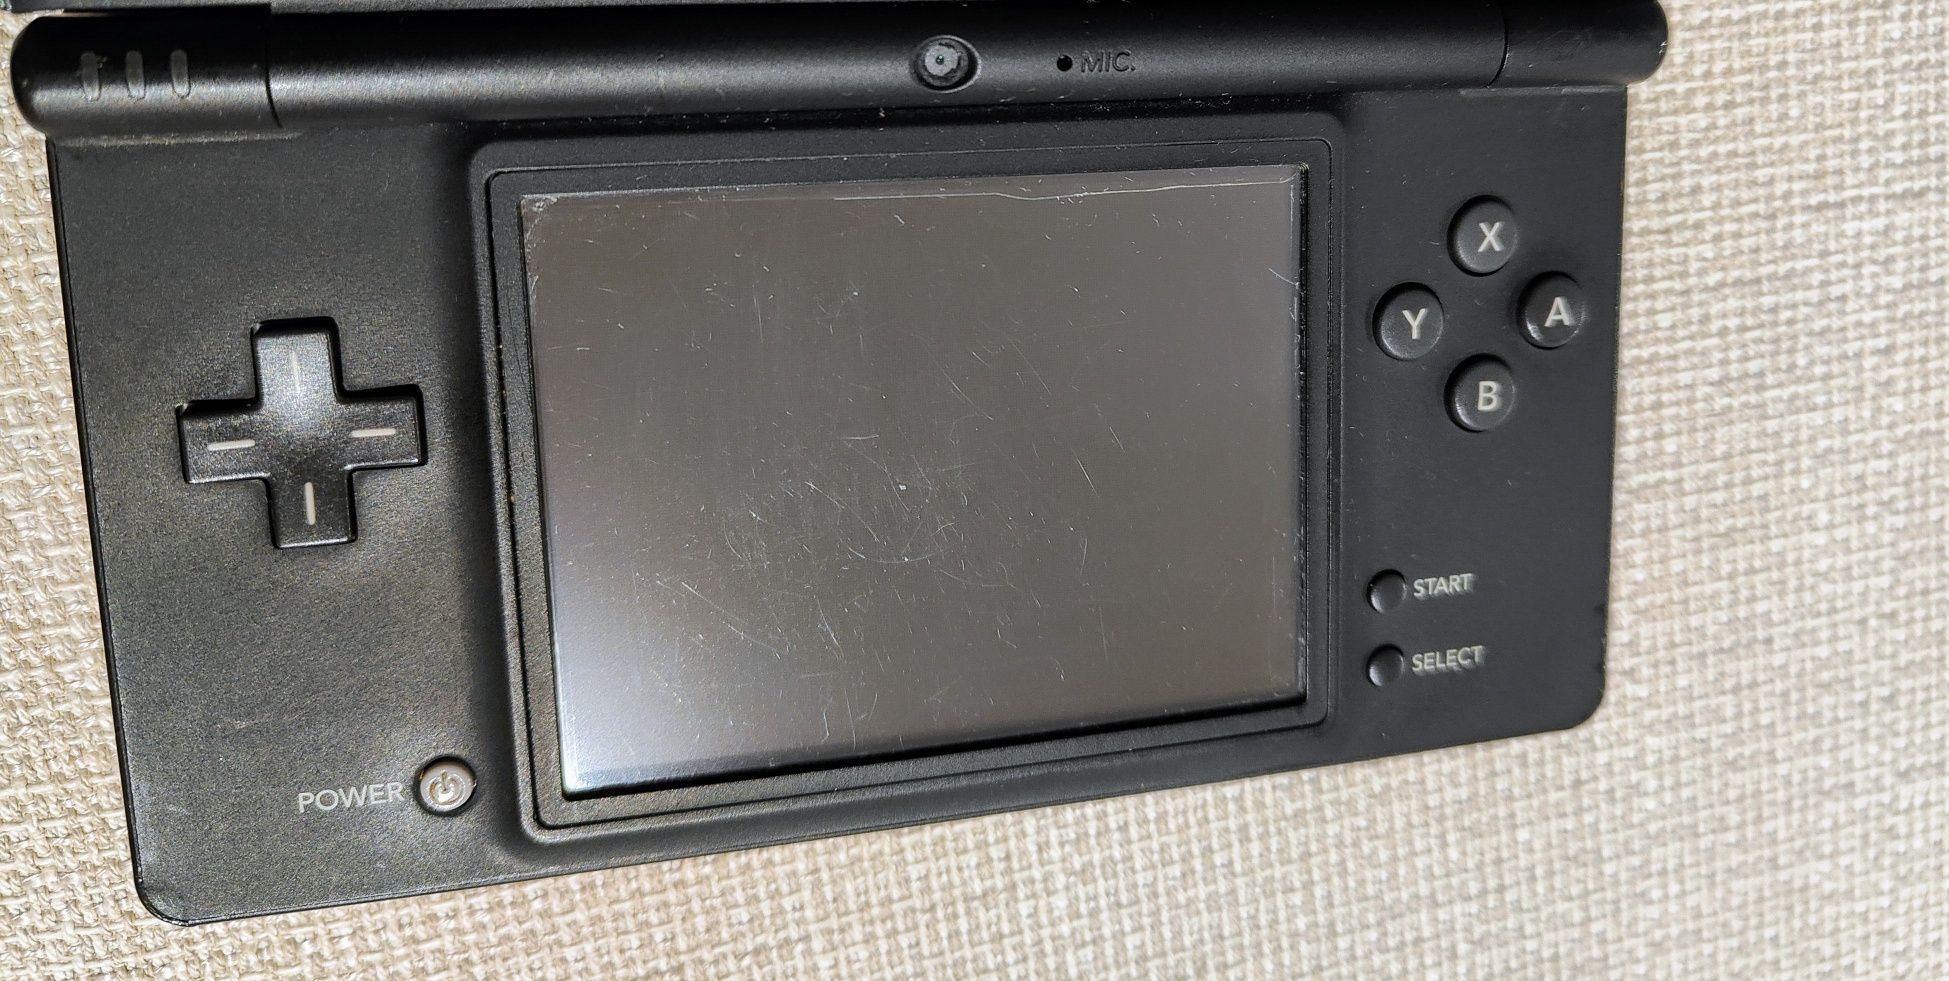 Nintendo DSi Pokémon Black edition